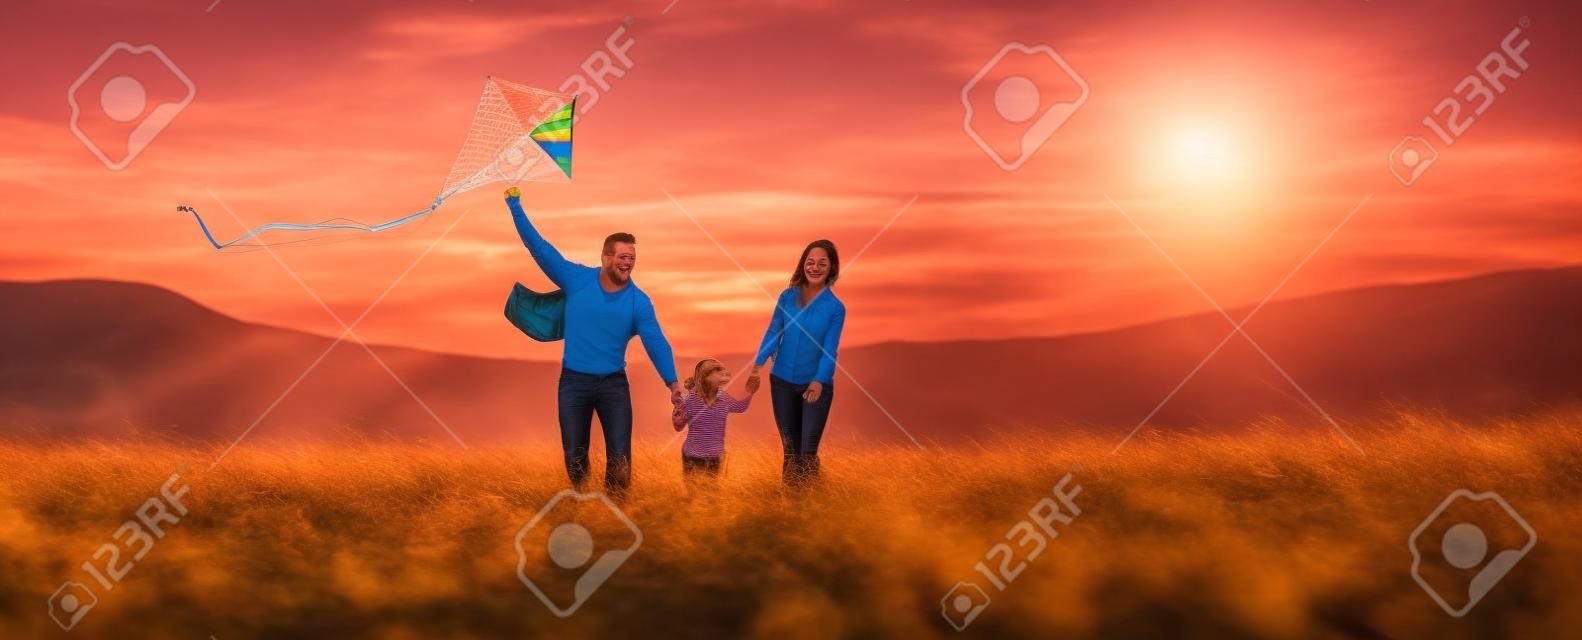 Glückliche Familienvater-, Mutter- und Kindertochter starten einen Drachen auf Natur bei Sonnenuntergang